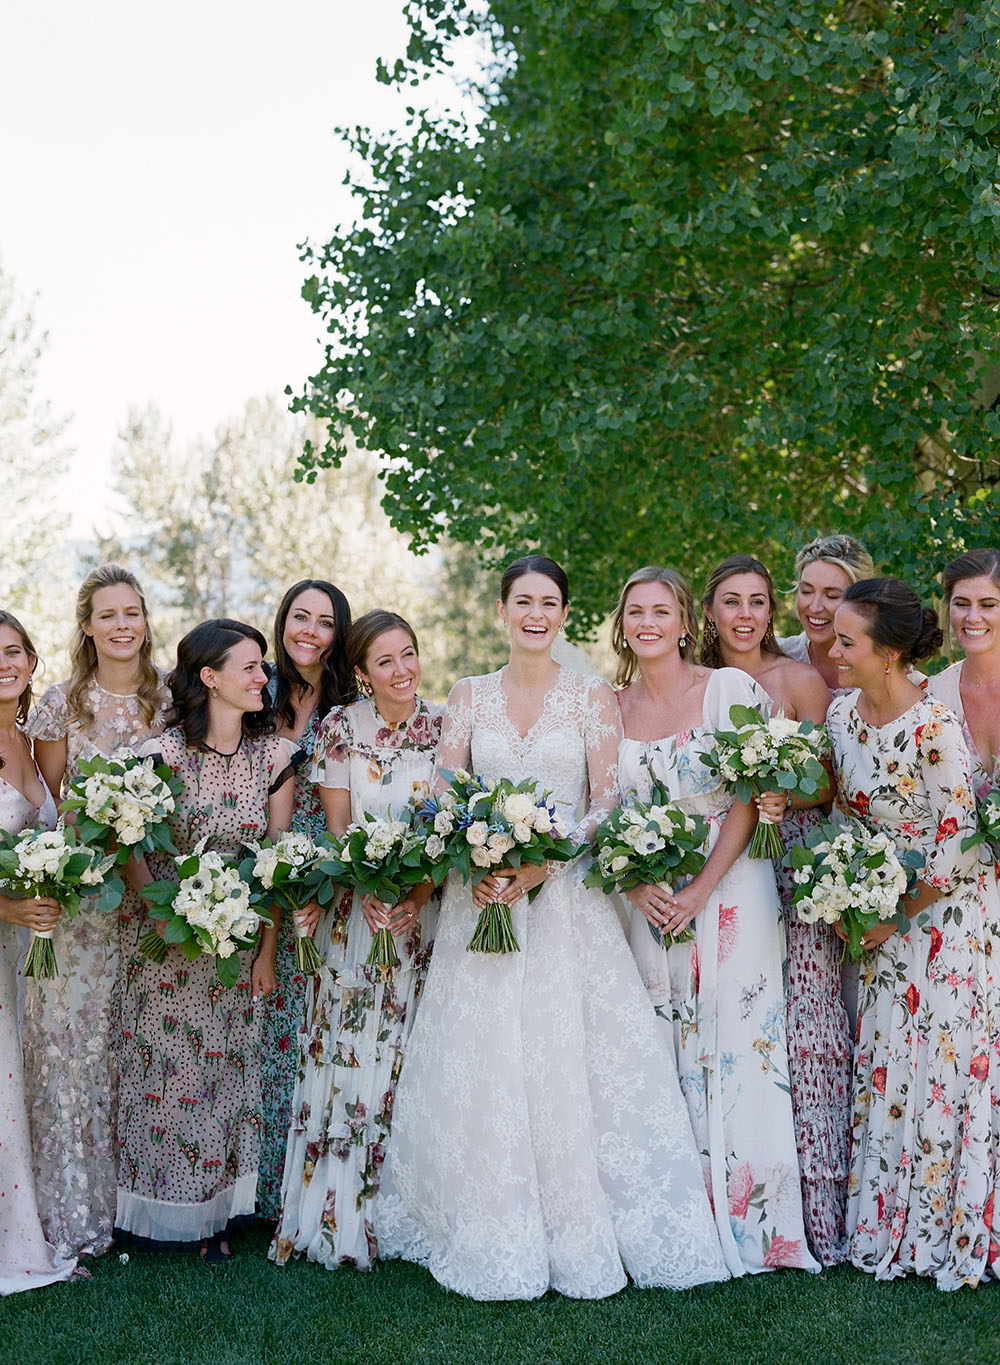 Mismatched Floral Bridesmaid Dresses